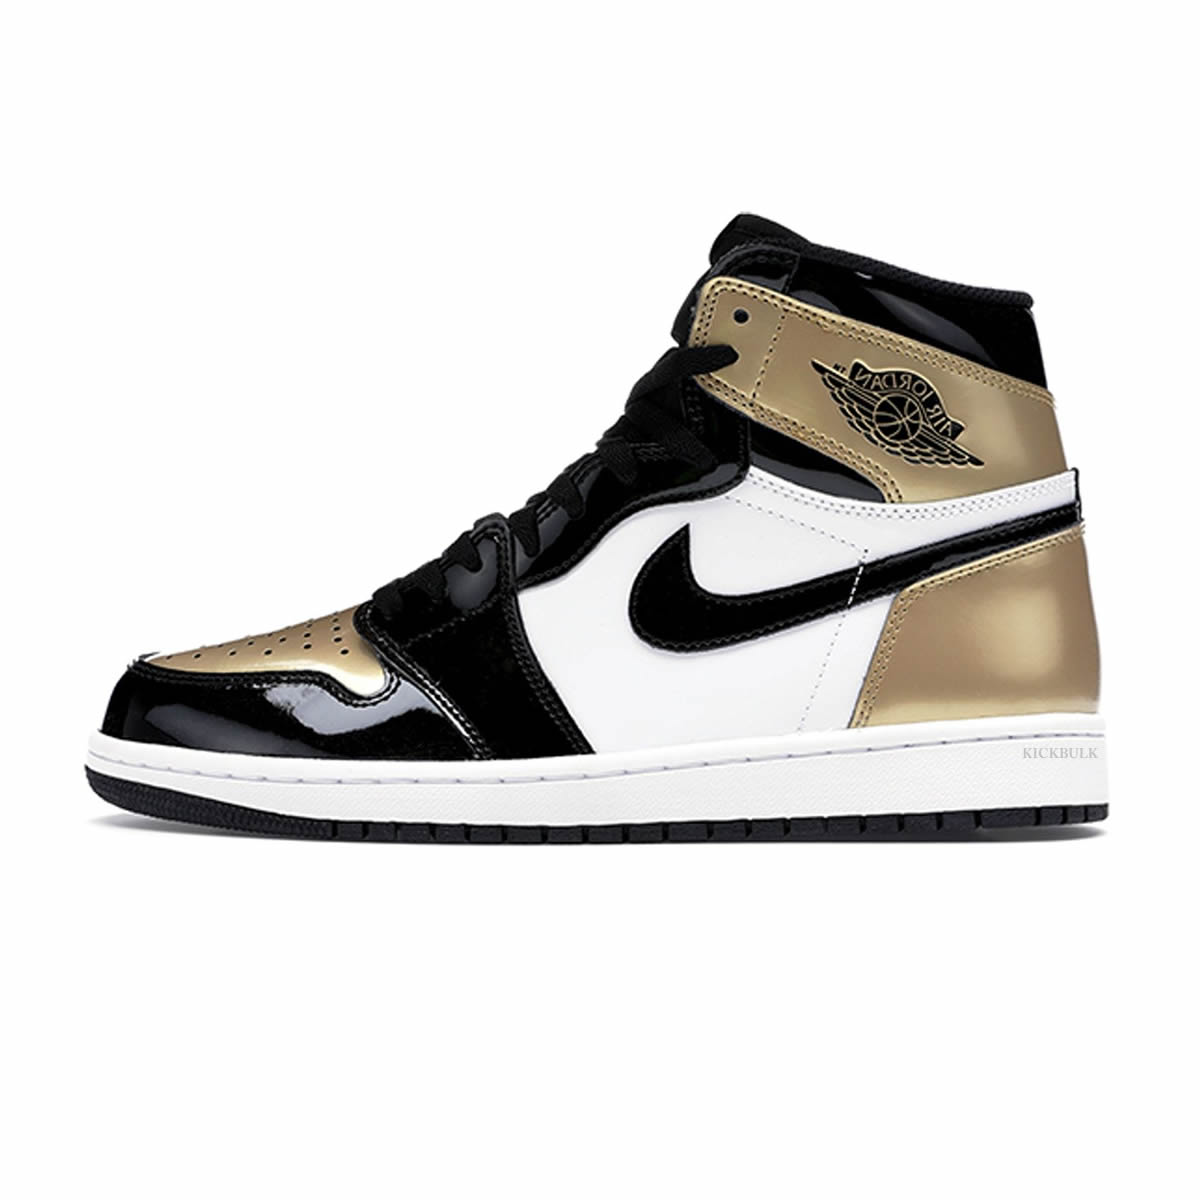 Nike Air Jordan 1 Retro High Og Gold Toe 861428 007 0 - kickbulk.cc